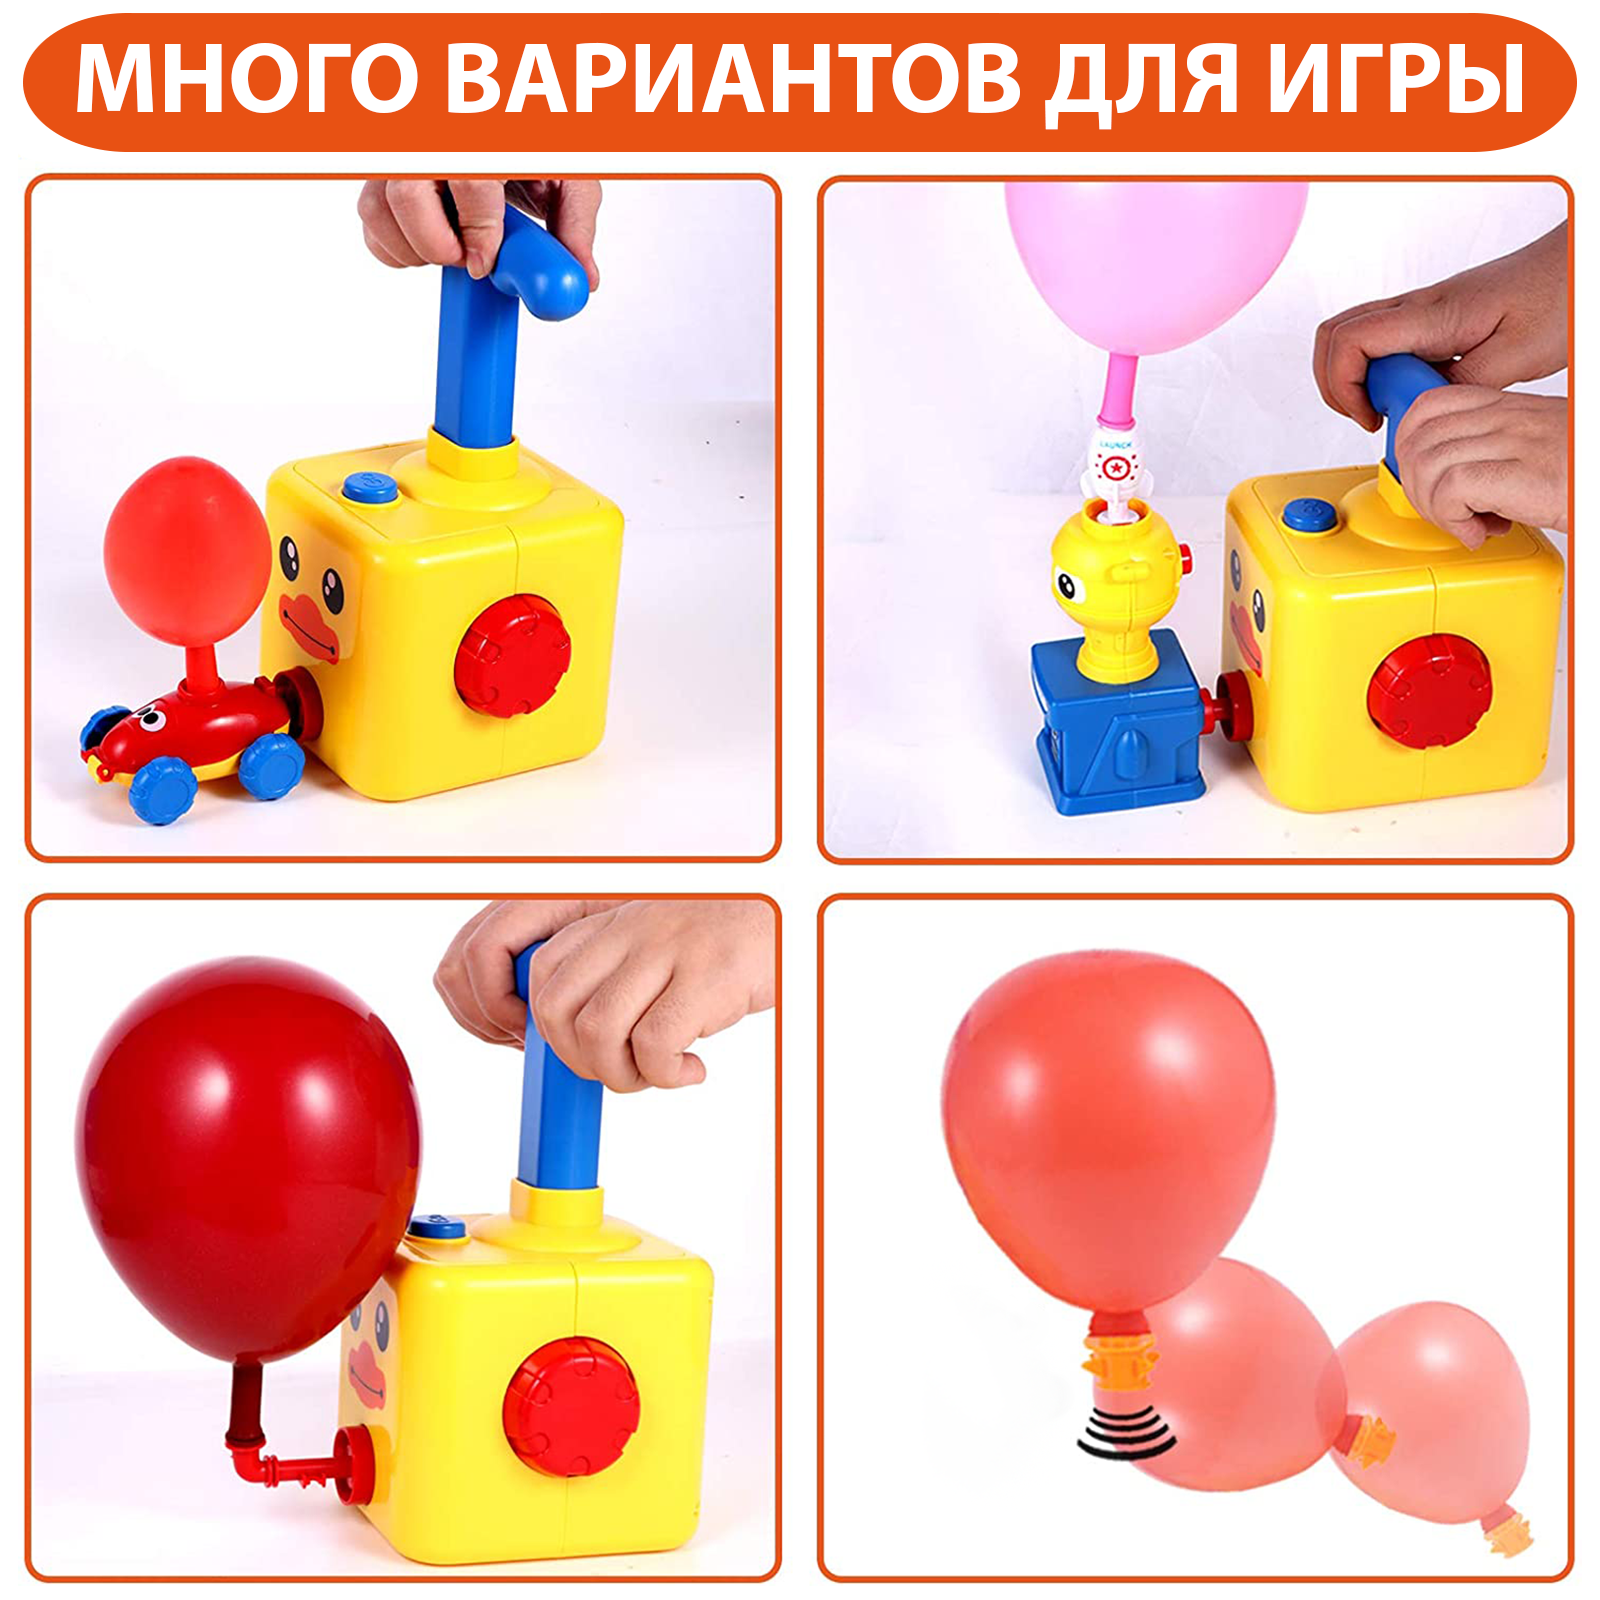 Игровой набор транспорт PELICAN HAPPY TOYS реактивные машинки на воздушных шариках - фото 3